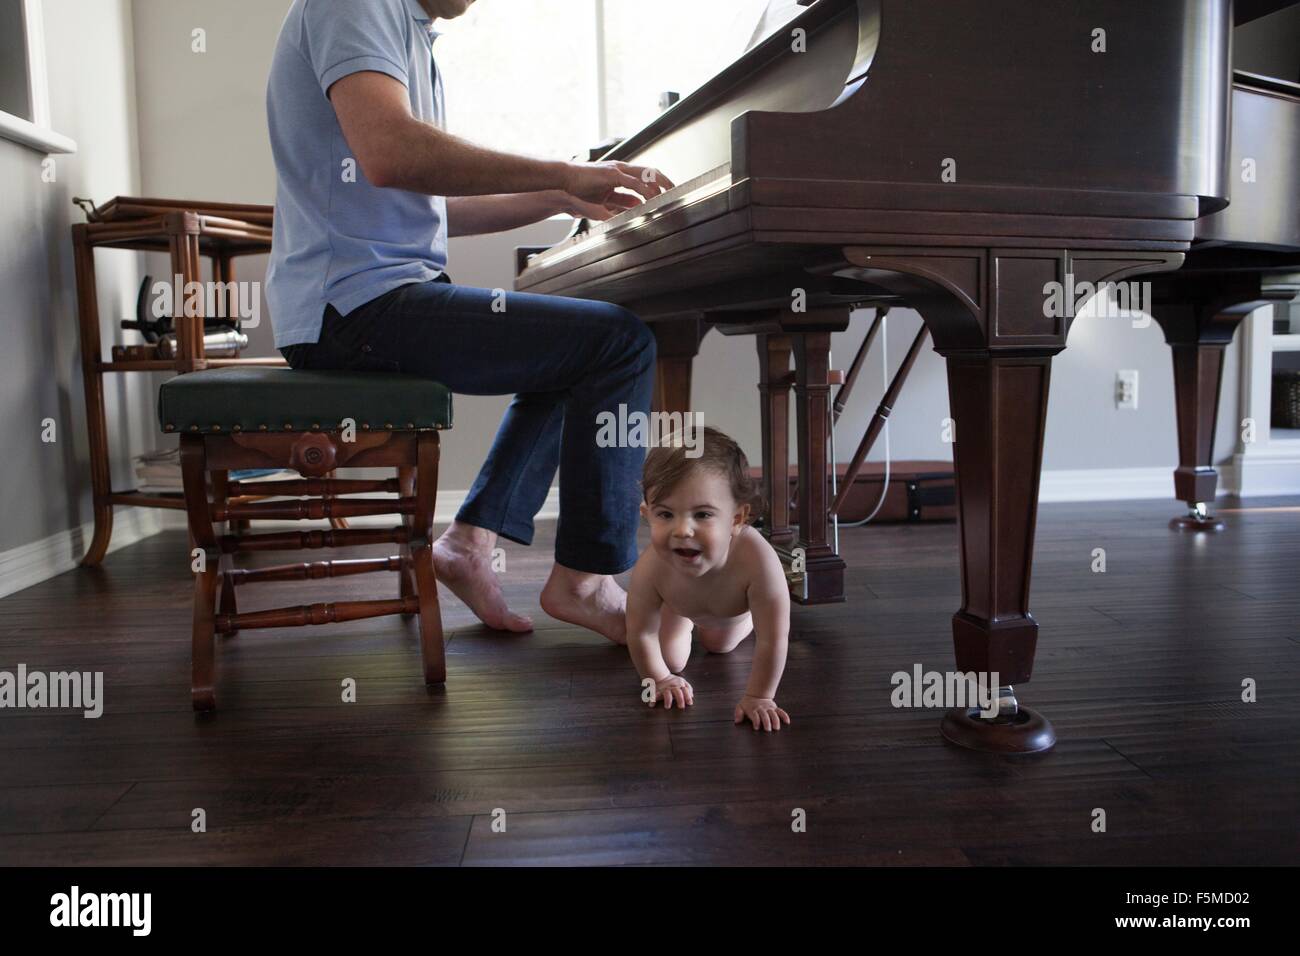 Vater mit Baby zu Füßen kriechen Klavier spielen Stockfotografie - Alamy